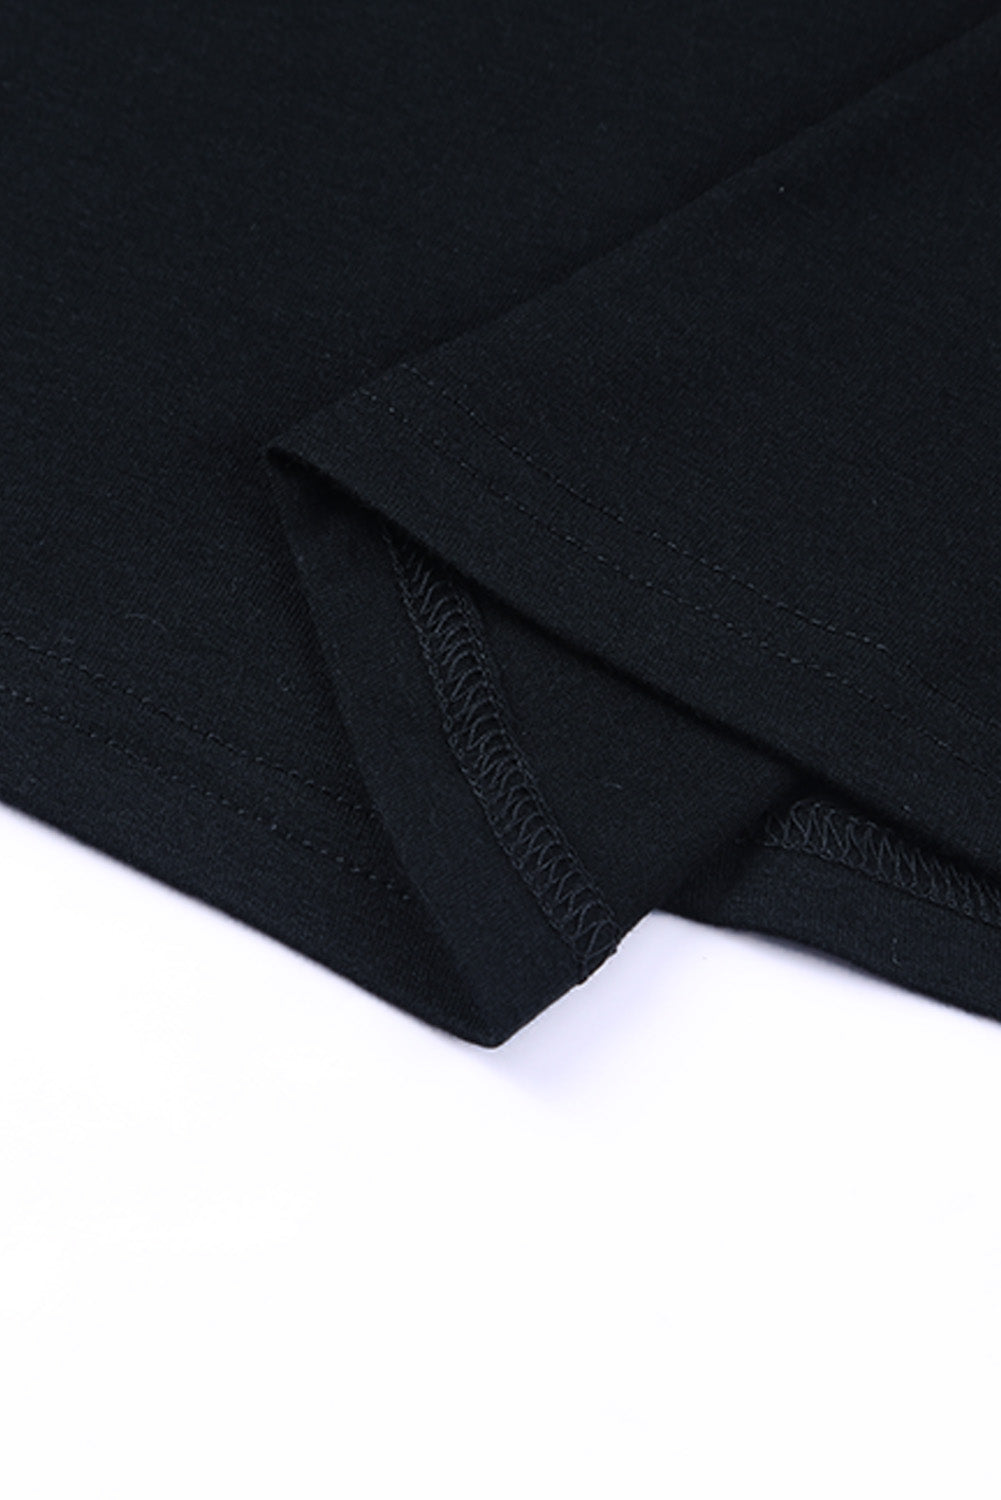 Crna majica kratkih rukava s okruglim izrezom i cvjetnim vezenjem